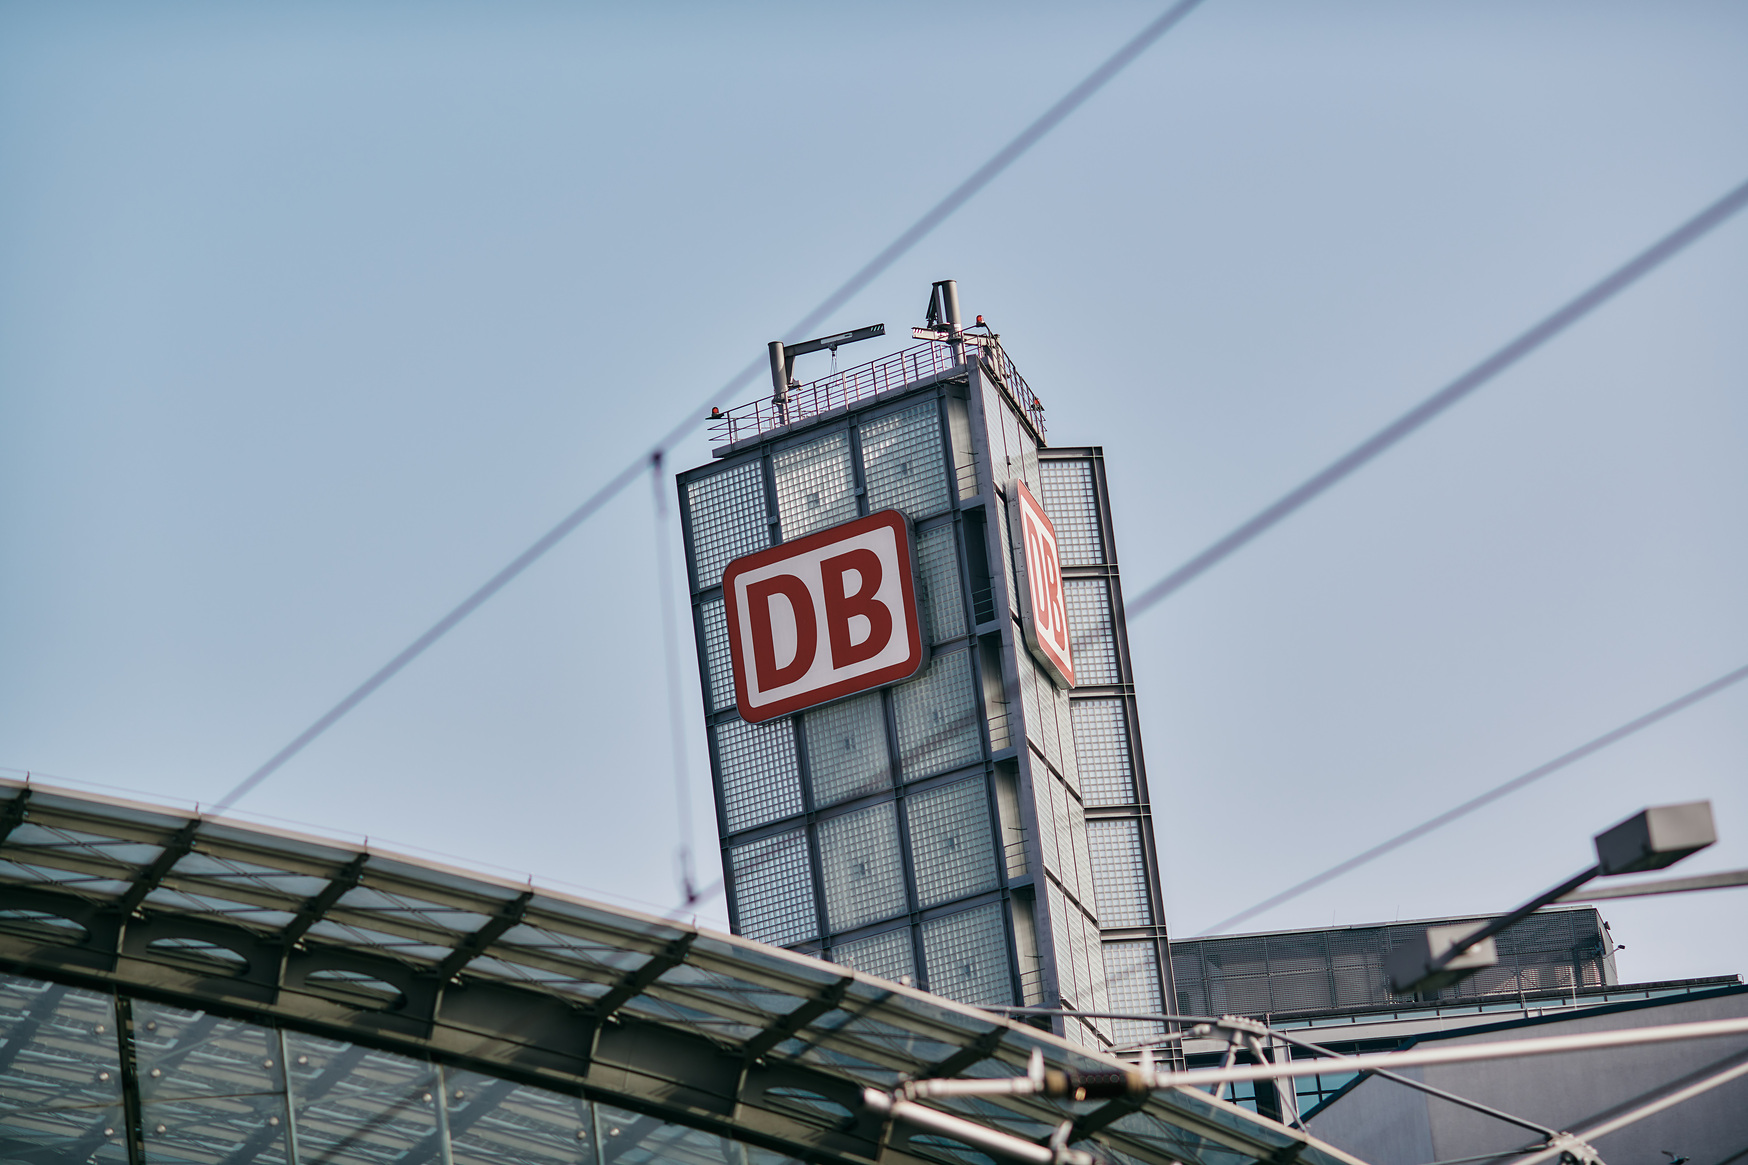 Copyright_Deutsche Bahn AG : Dominic Dupont.jpg